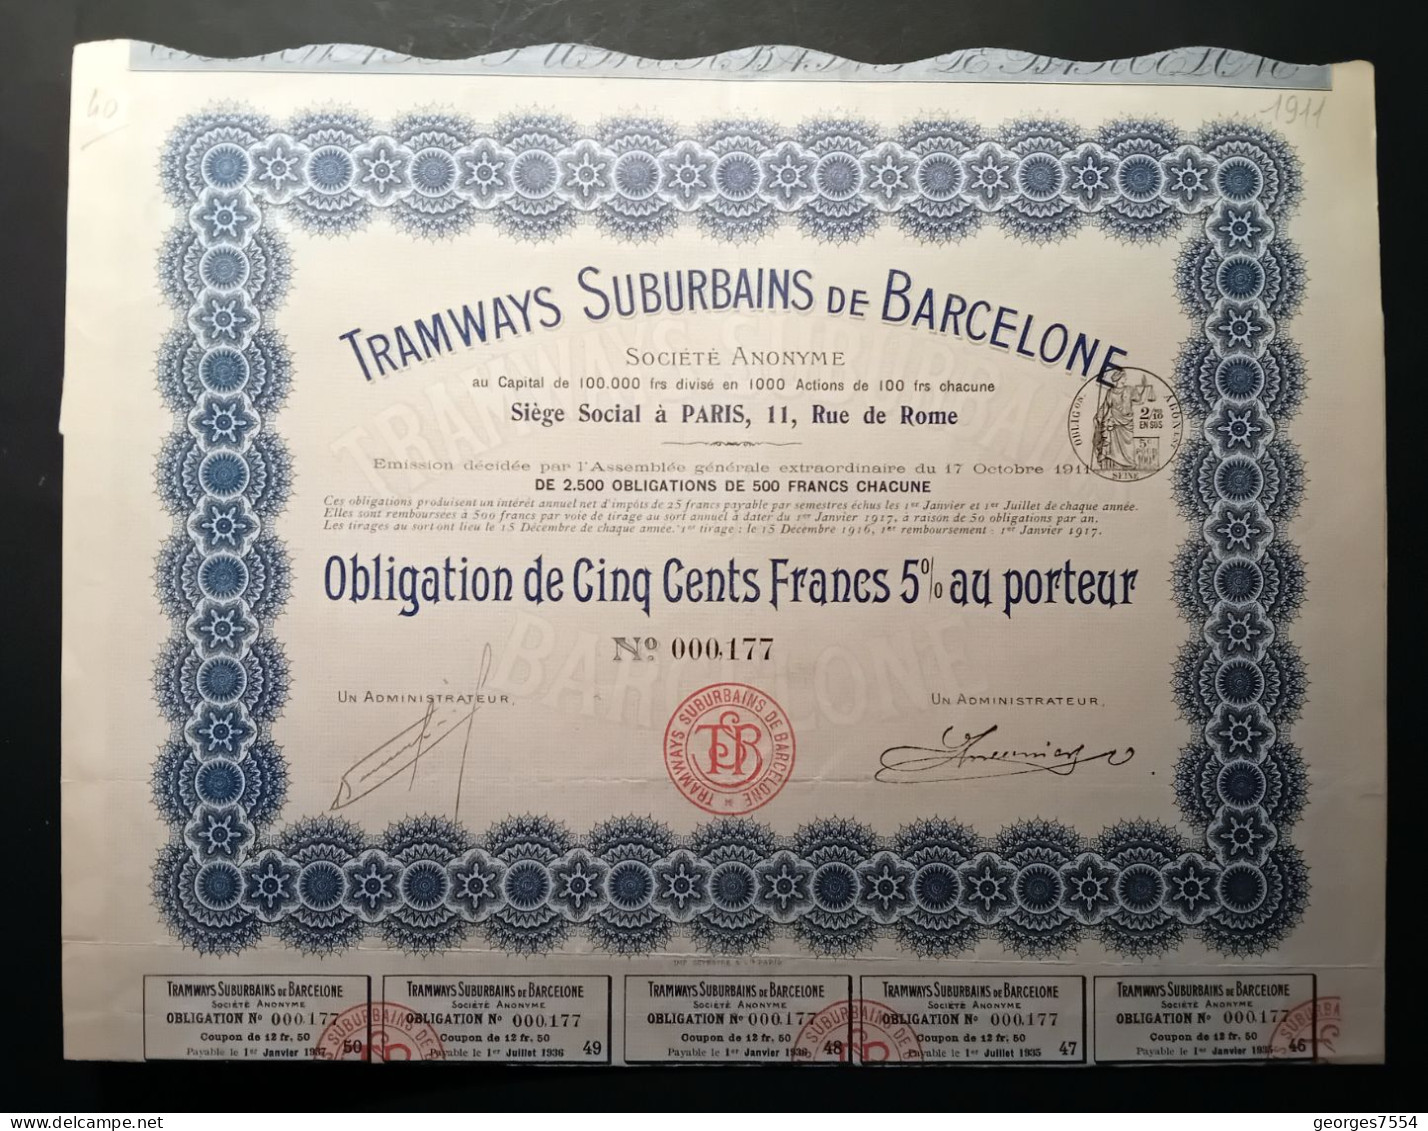 TRAMWAYS SUBURBAINS DE BARCELONE DE JOUISSANCE AU PORTEUR OBLIGATION DE 500 FRANCS 1911 - Transports